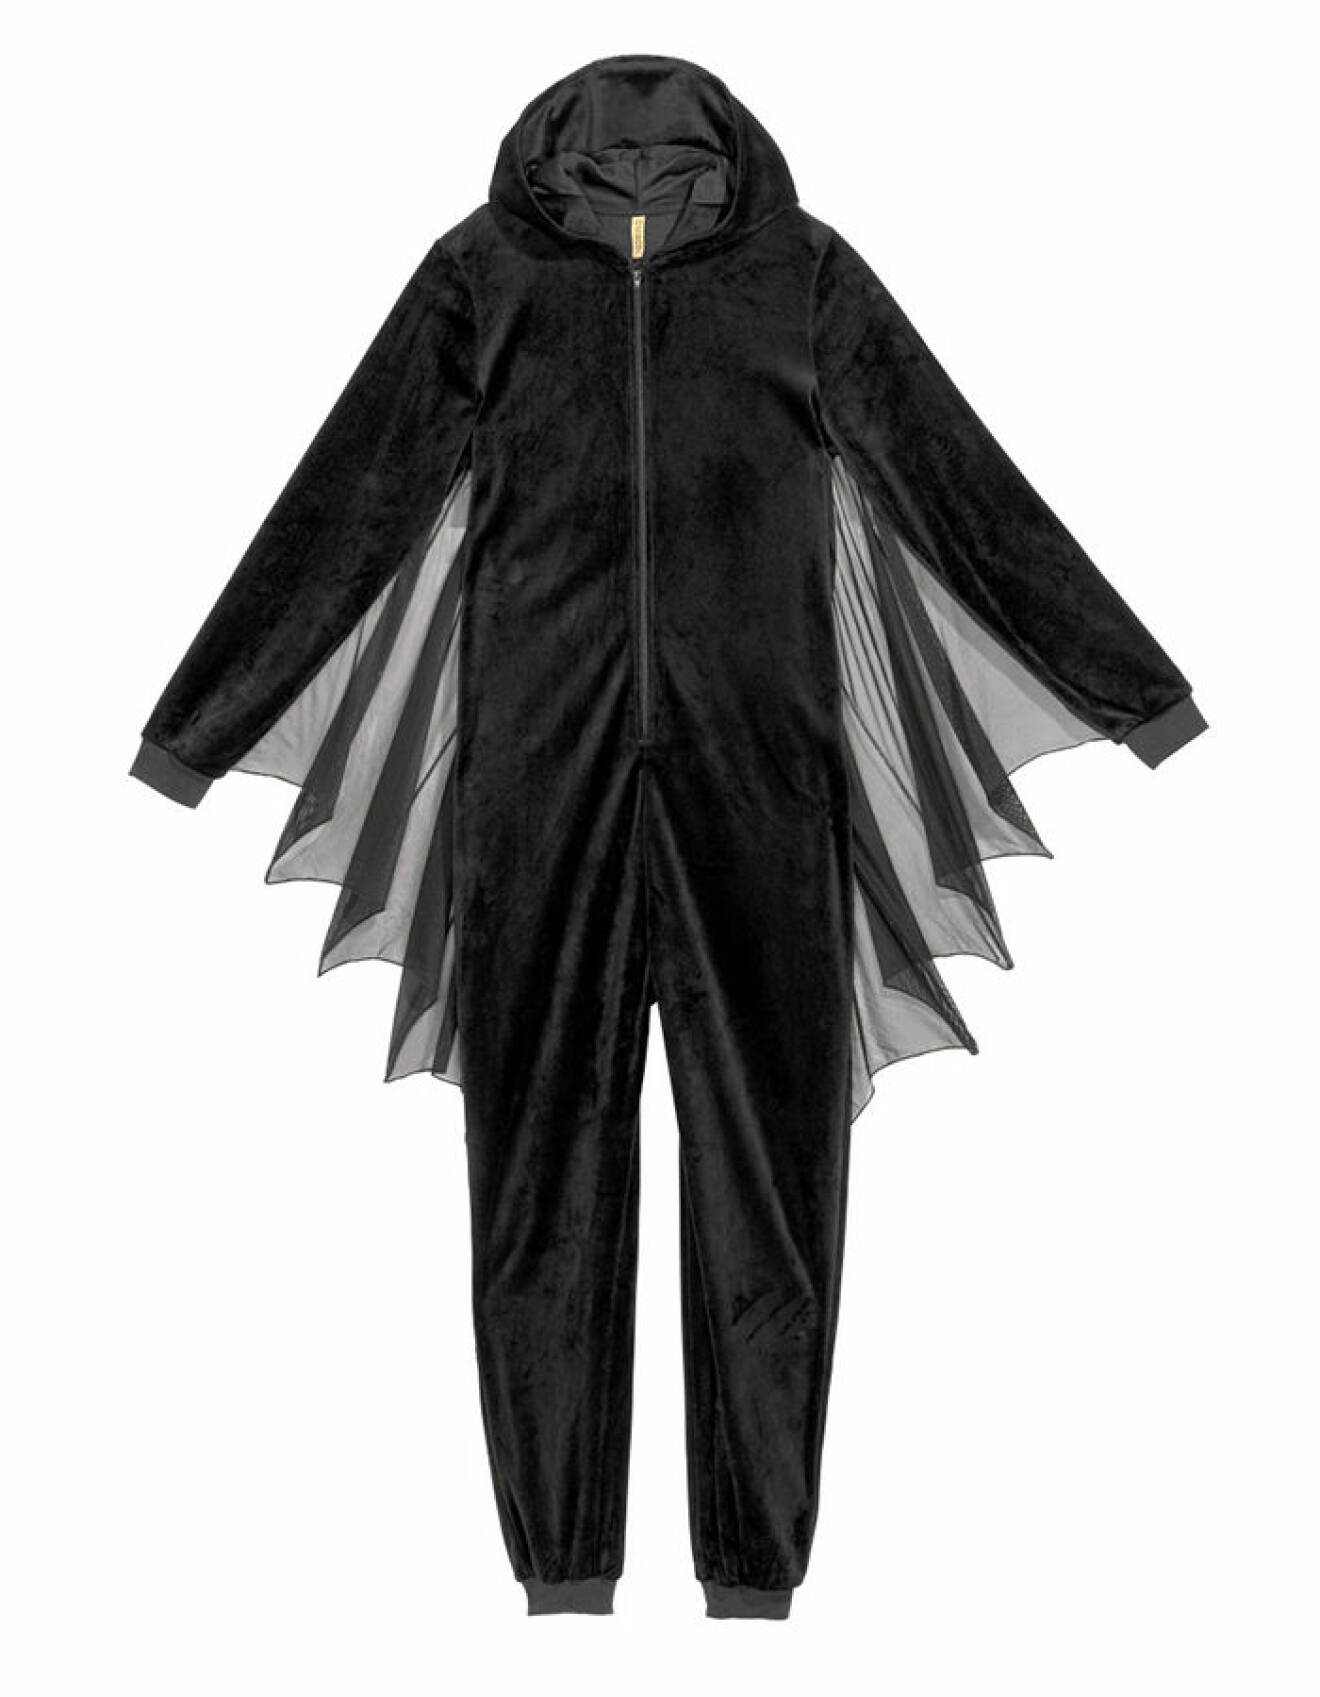 Halloweenkonstym från H&M föreställande en fladdermus.